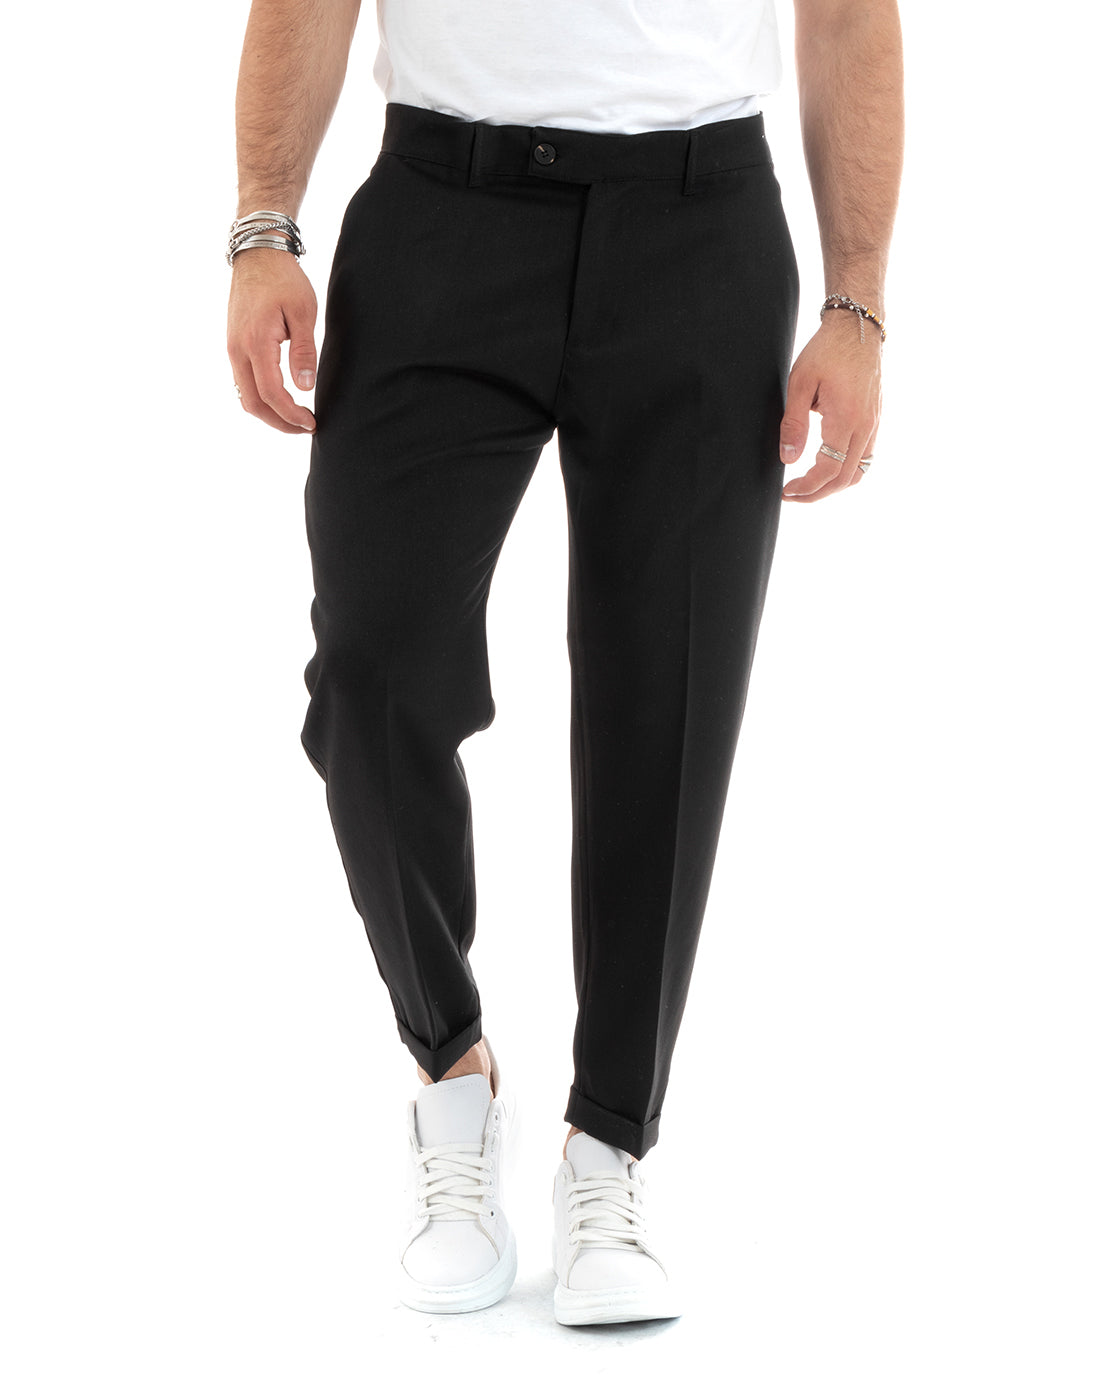 Pantaloni Uomo Tasca America Classico Nero Melangiato Abbottonatura Allungata Casual GIOSAL-P6049A